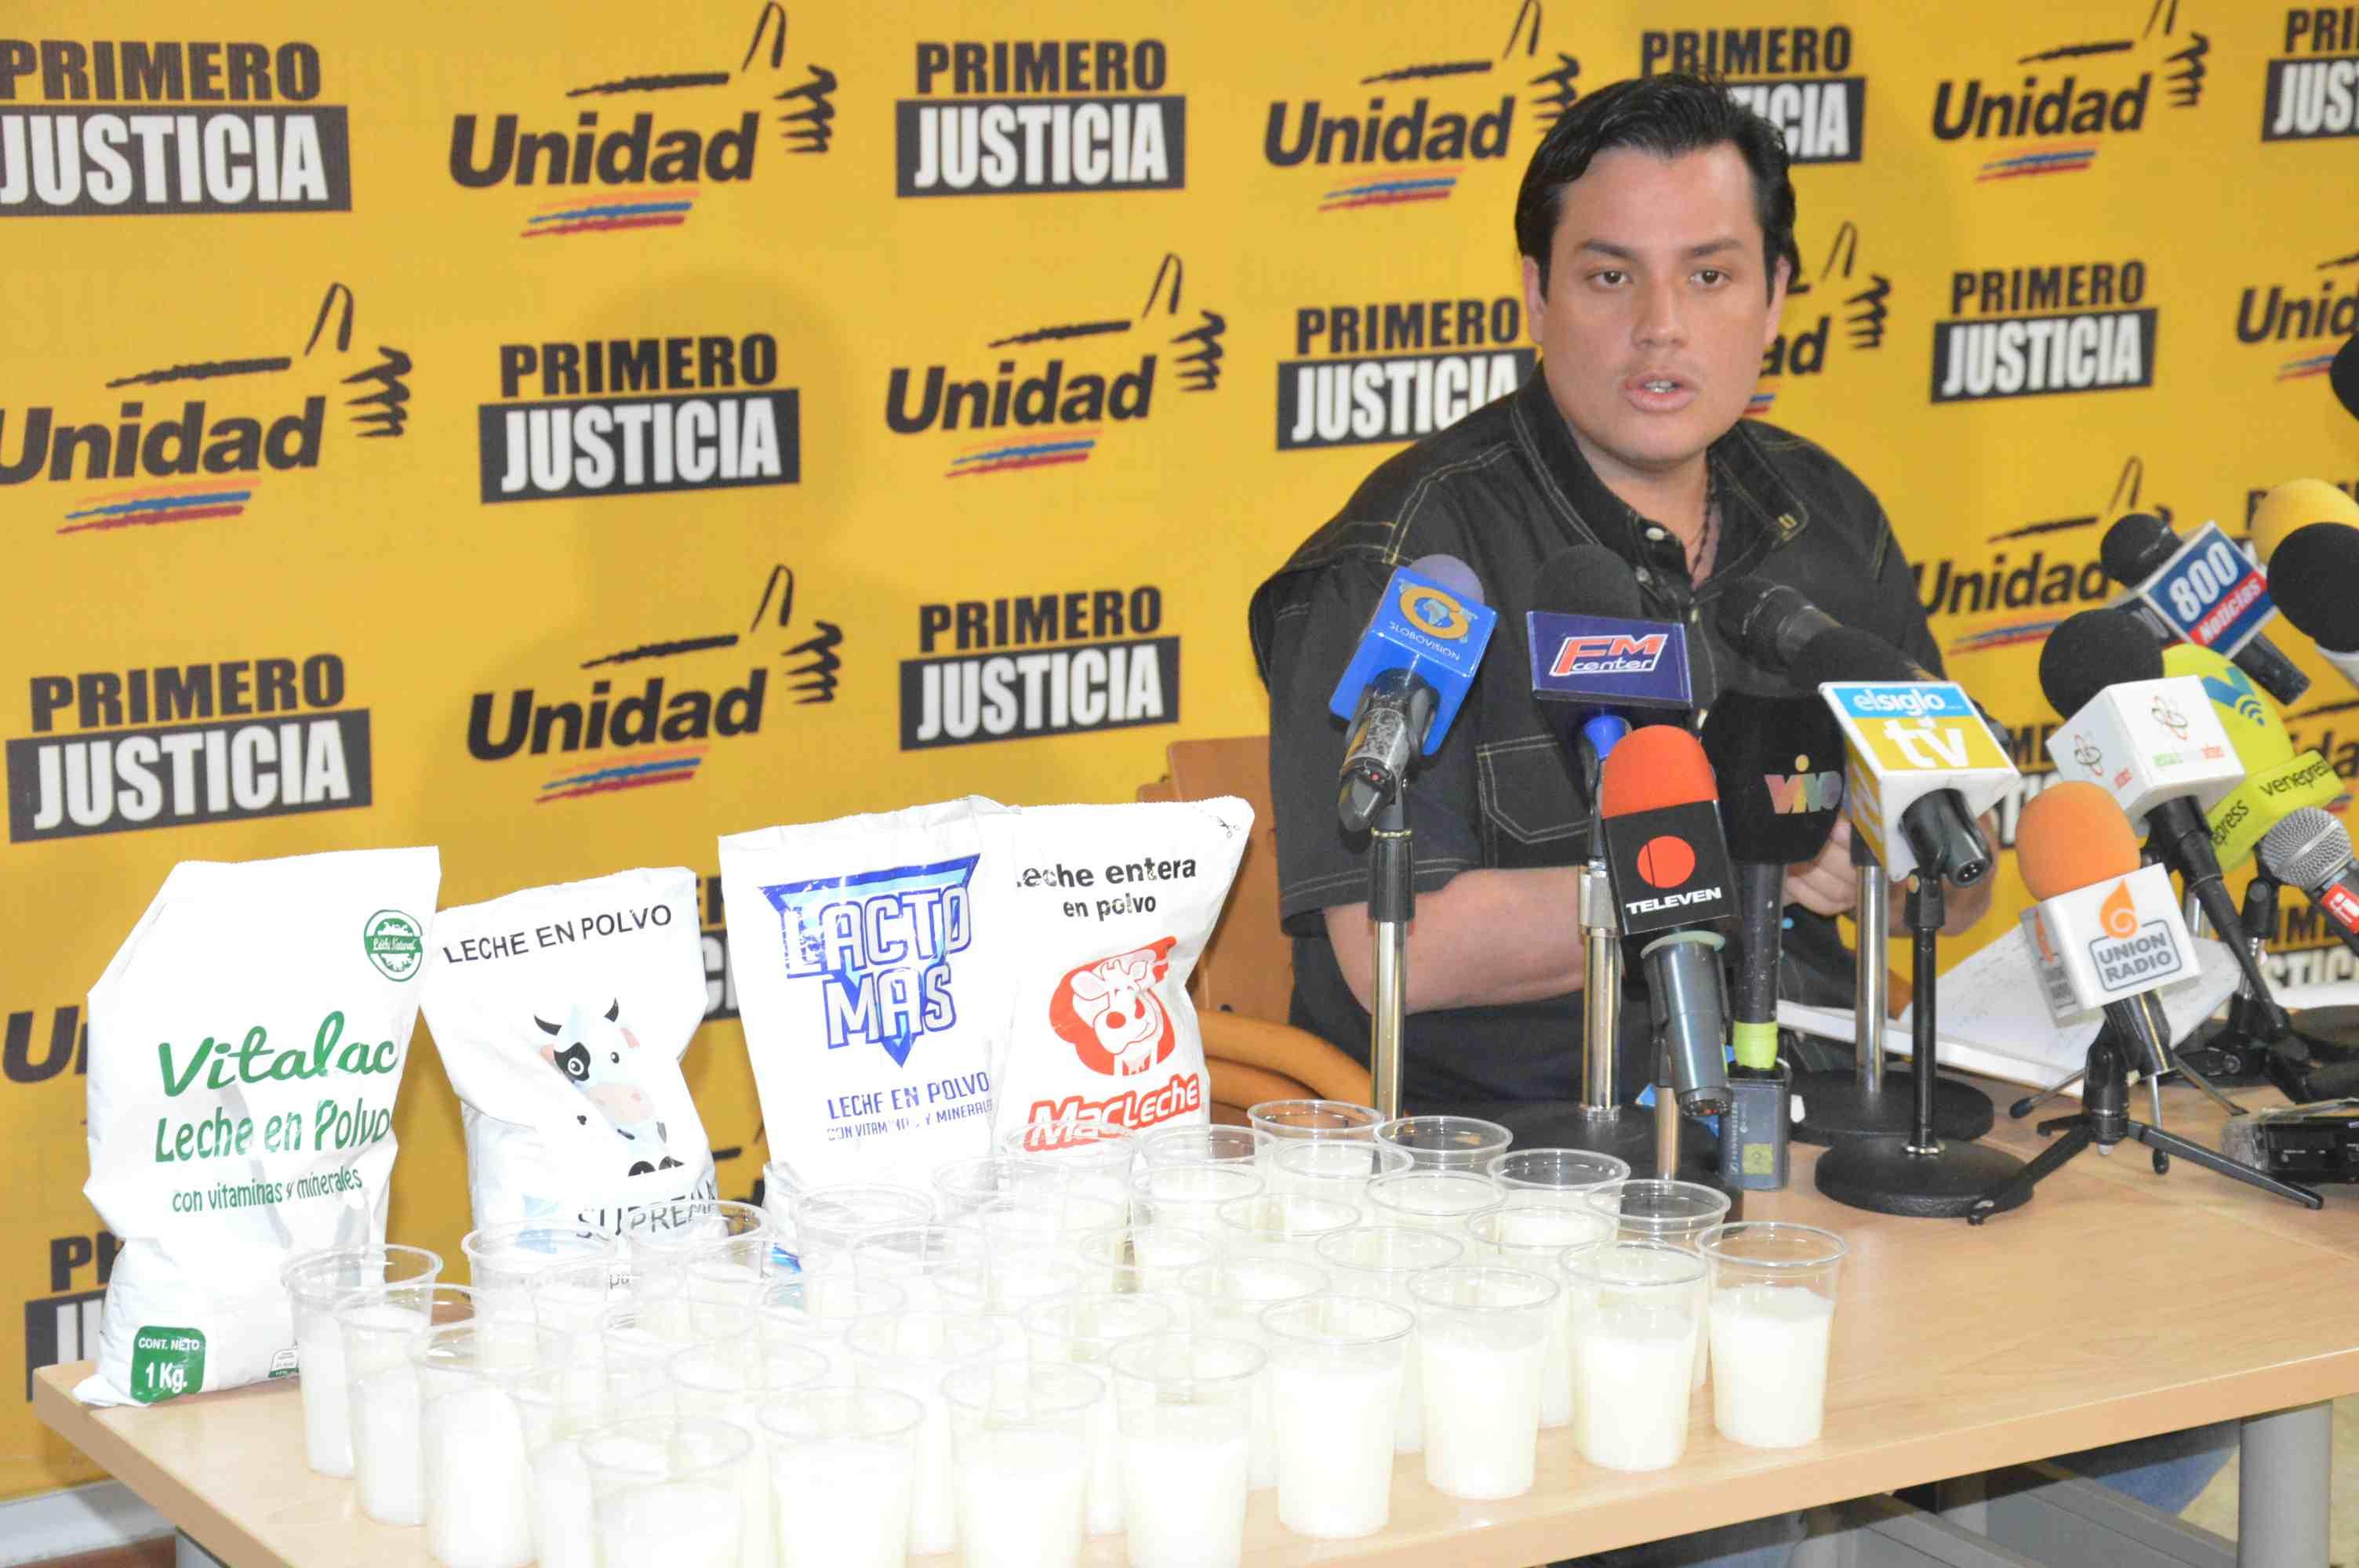 Carlos Paparoni denunció que leche distribuida en las cajas Clap incumplen normas venezolanas